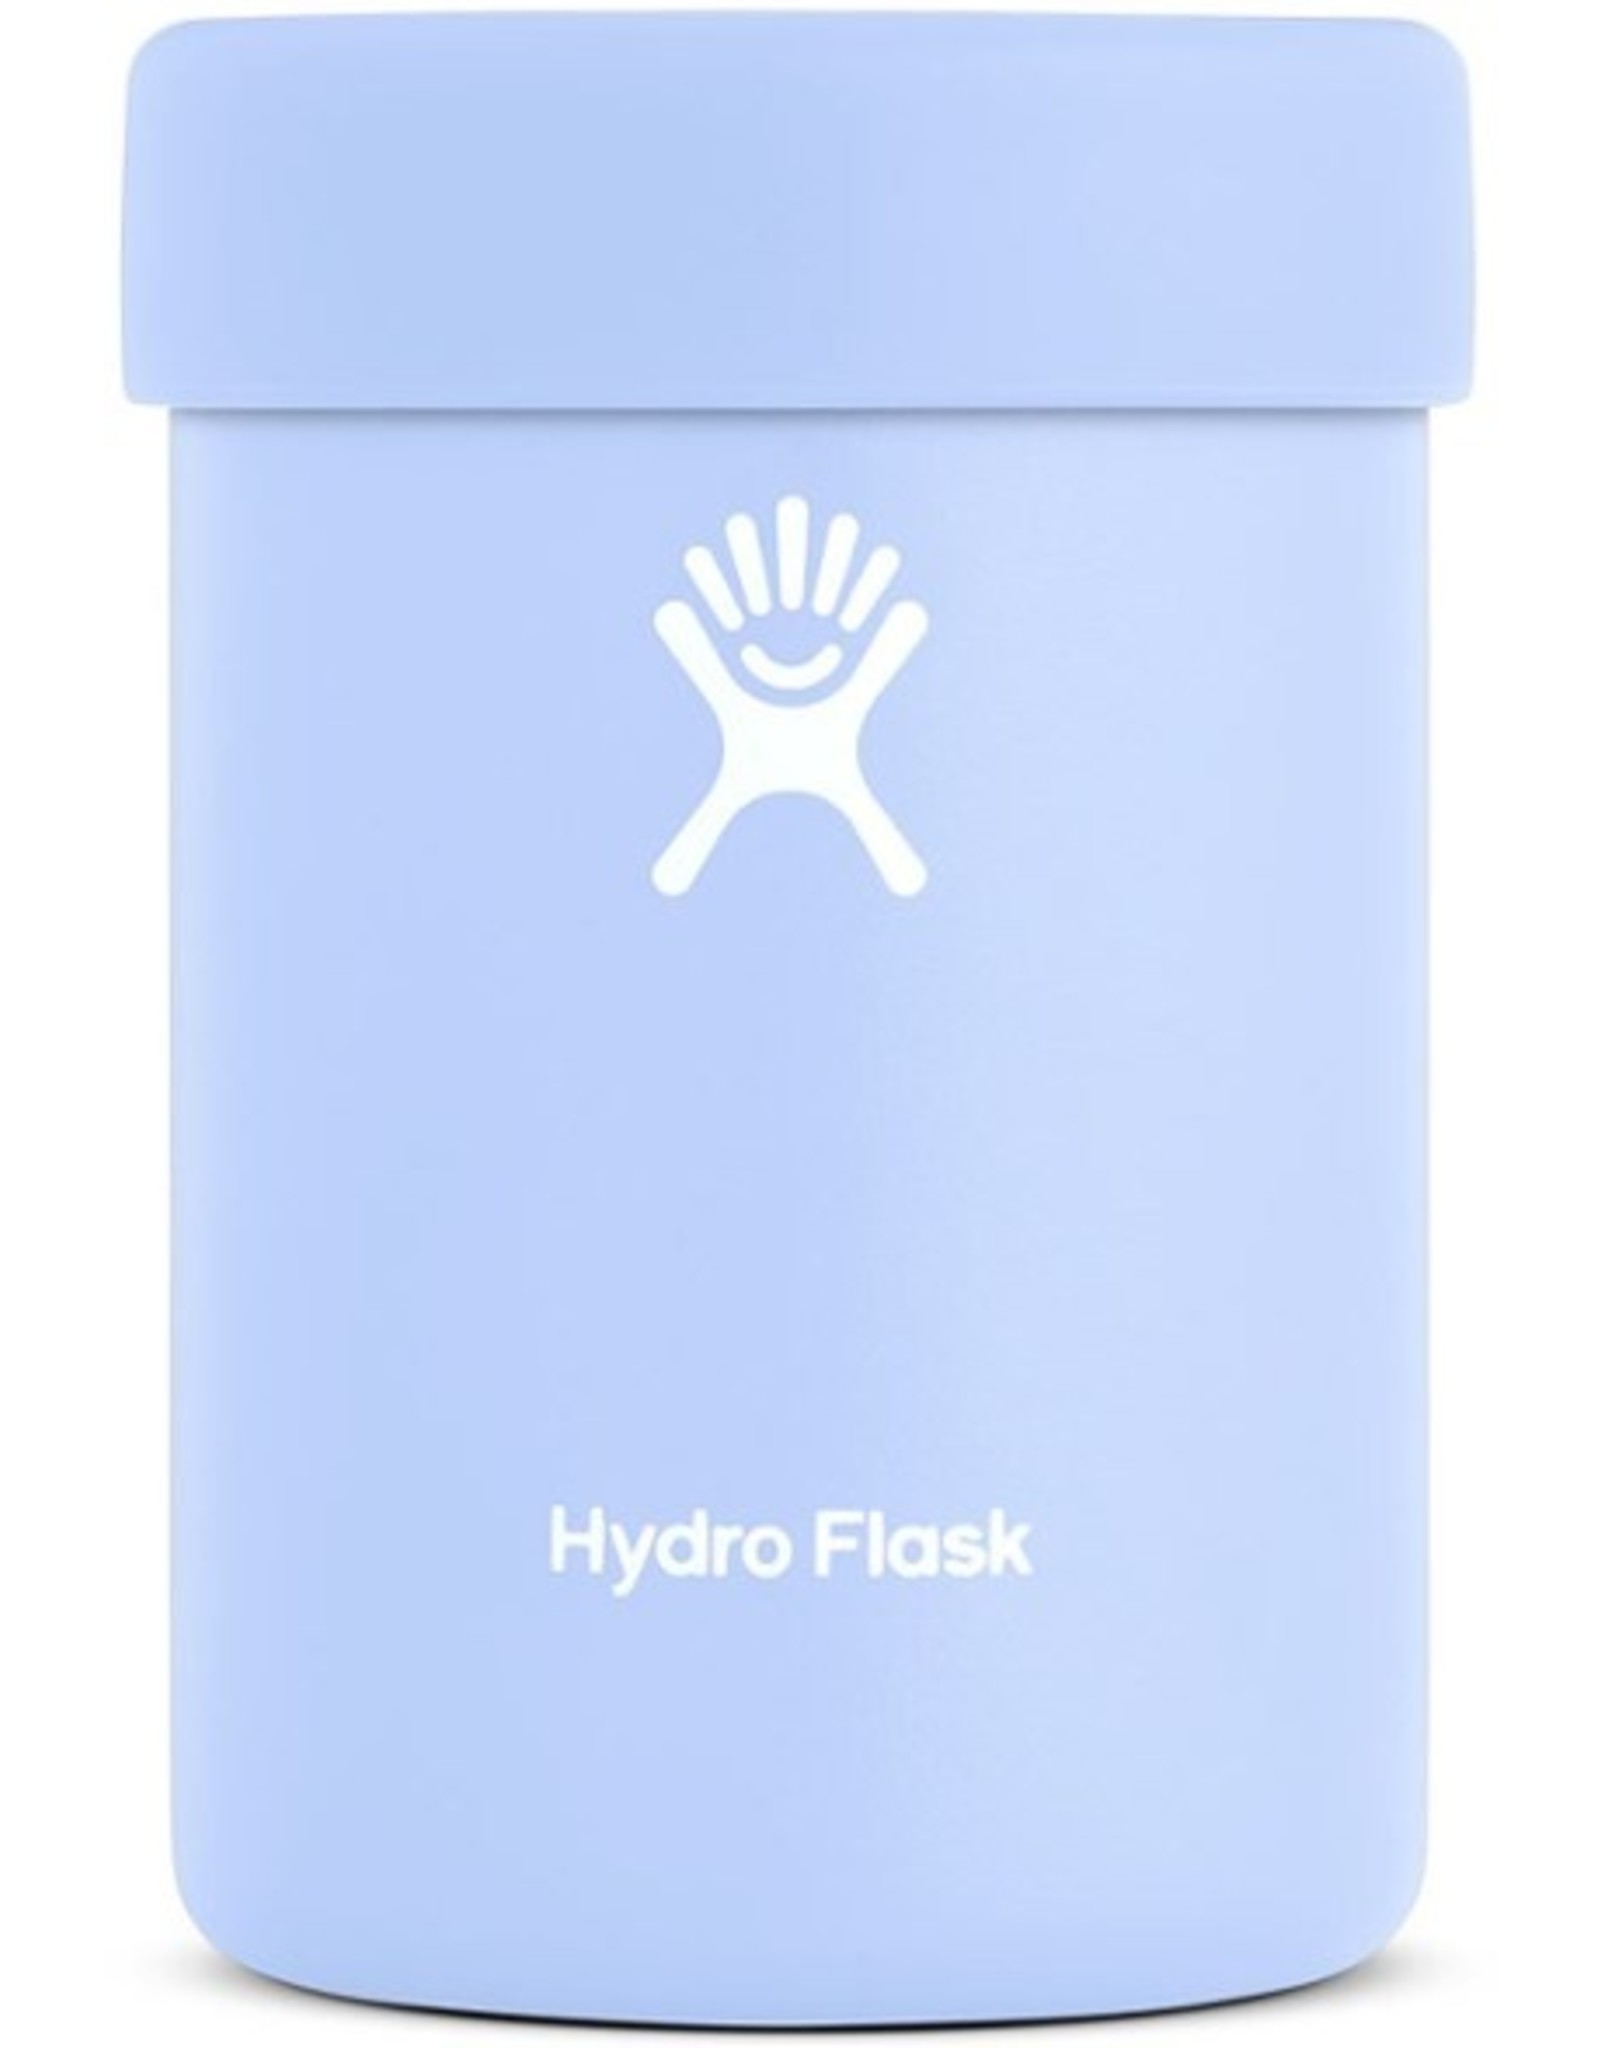 https://cdn.shoplightspeed.com/shops/632578/files/27276114/1600x2048x2/hydro-flask-12-oz-cooler-cup.jpg